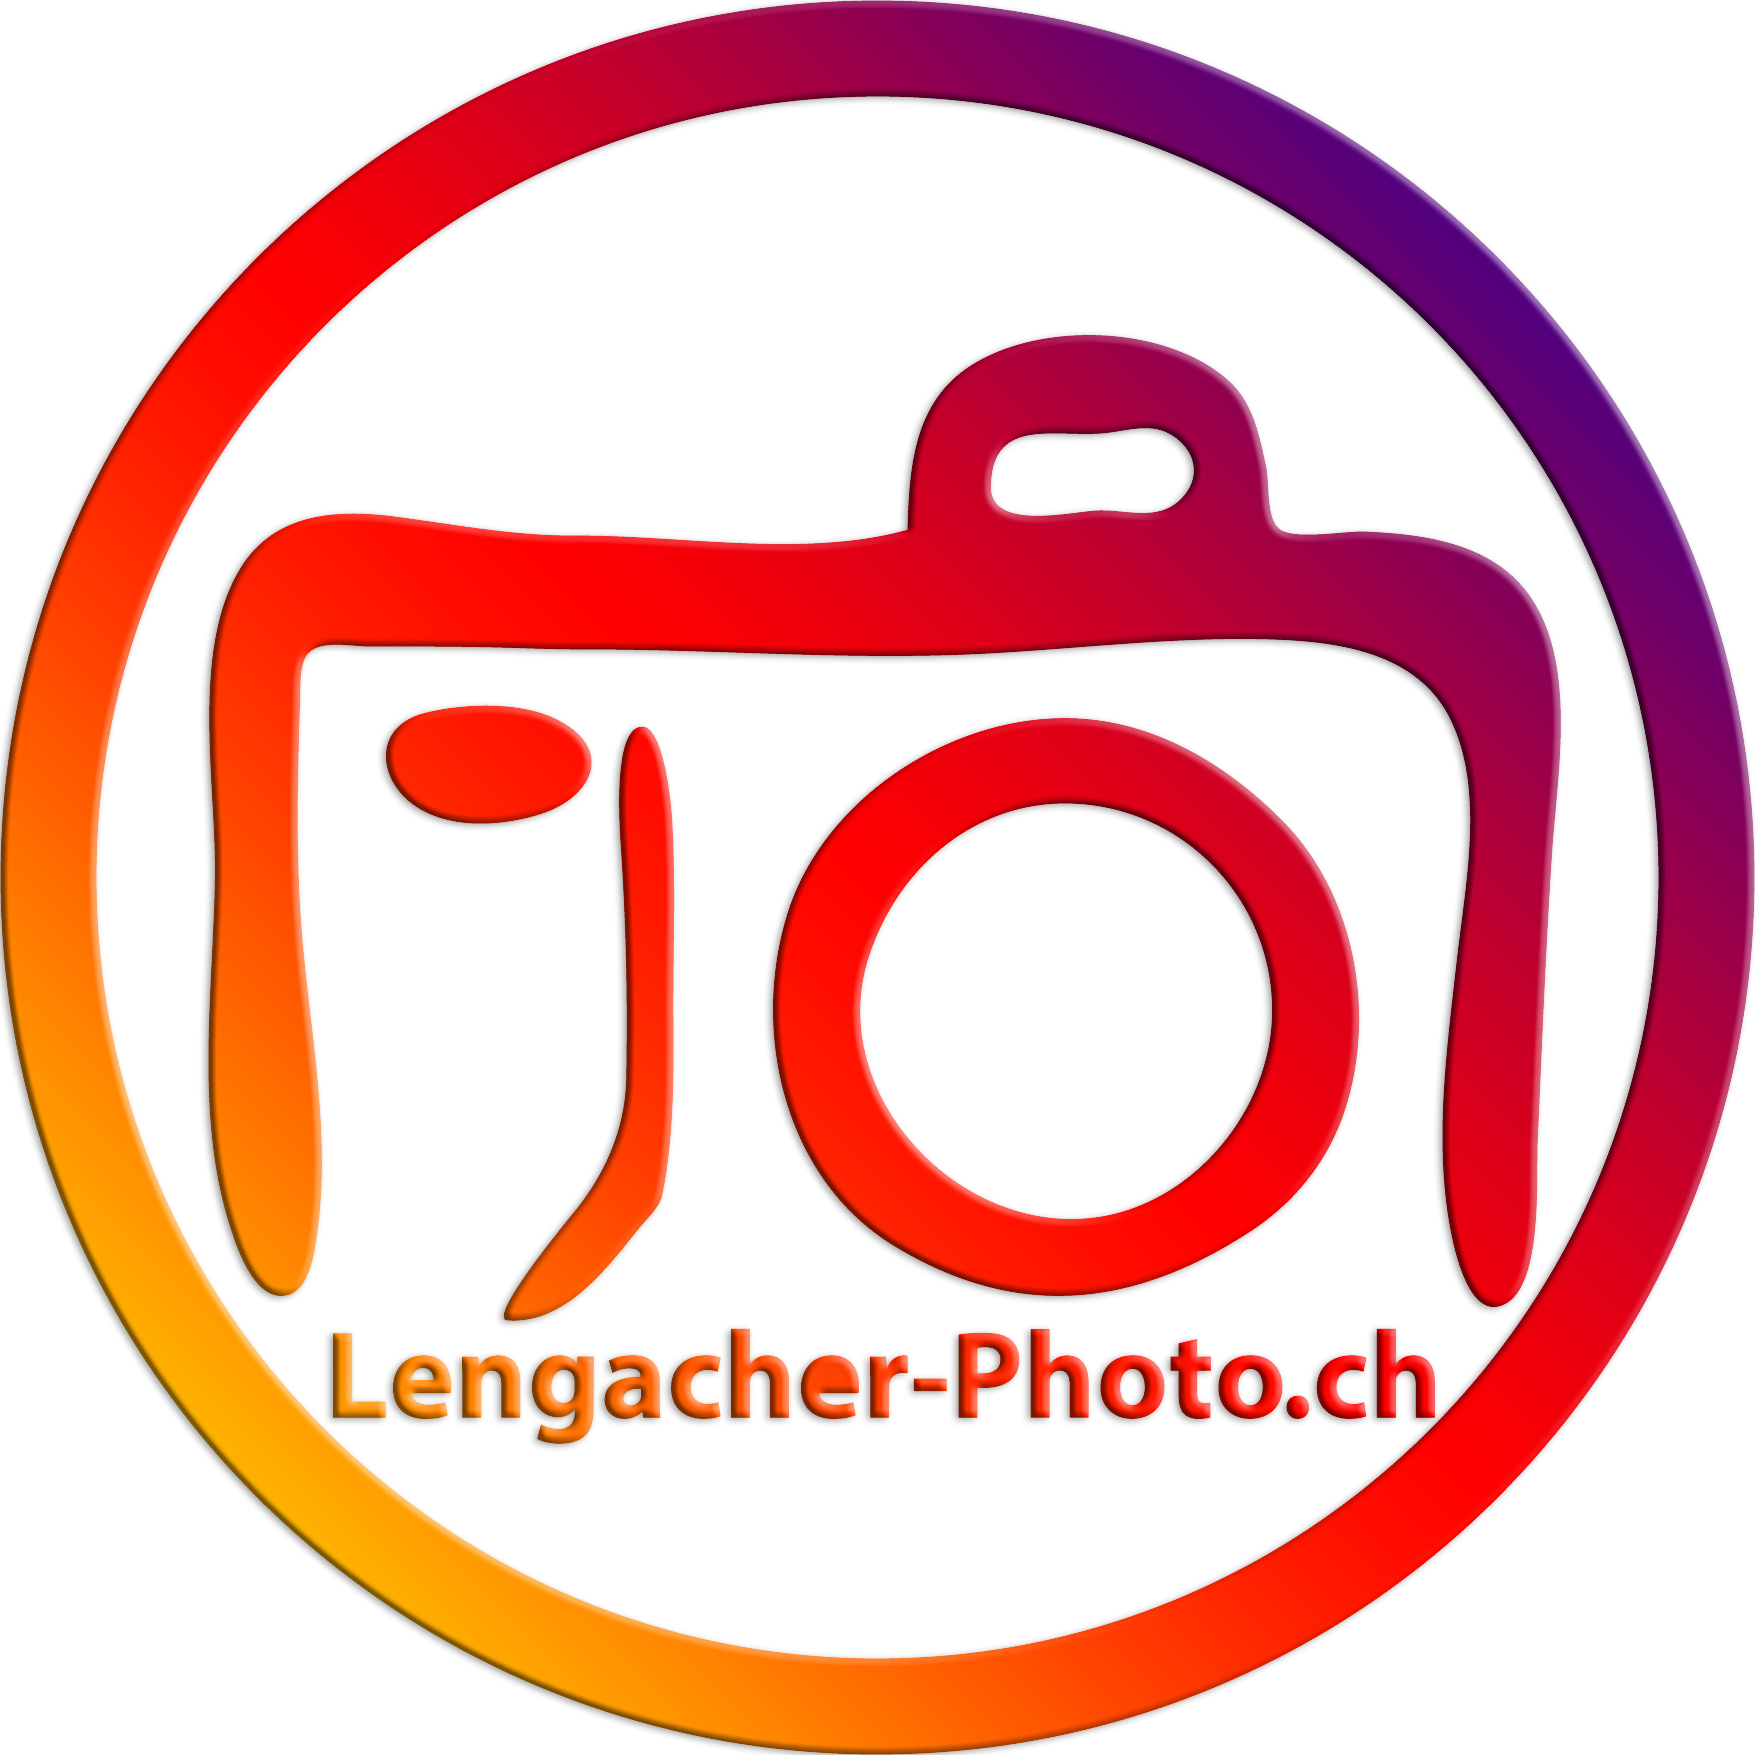 Lengacher Photo